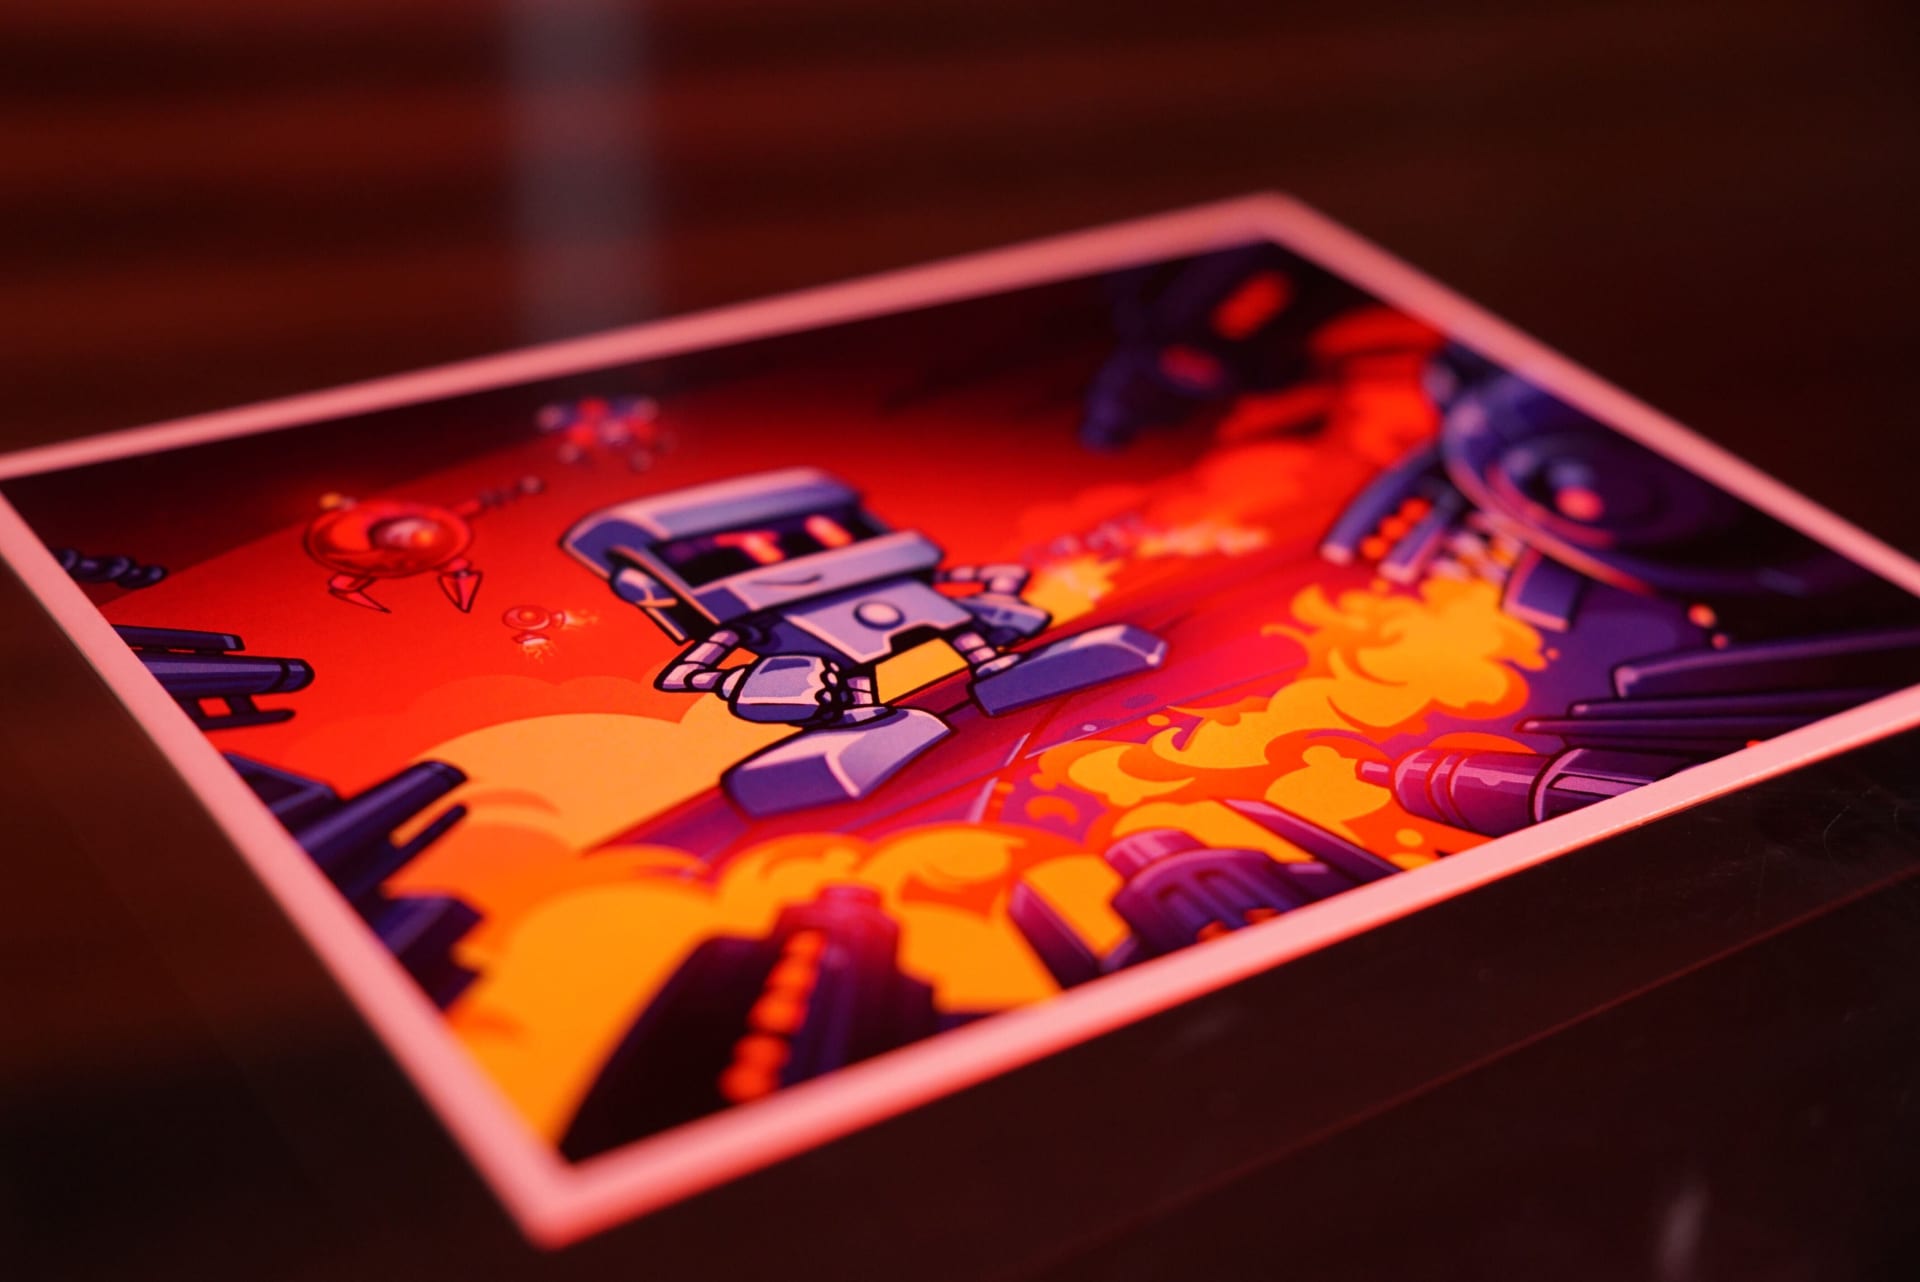 Sběratelská edice videohry Bzzzt obsahuje mini artbook, pohlednice, nálepky, magnetku a jedinečný soundtrack